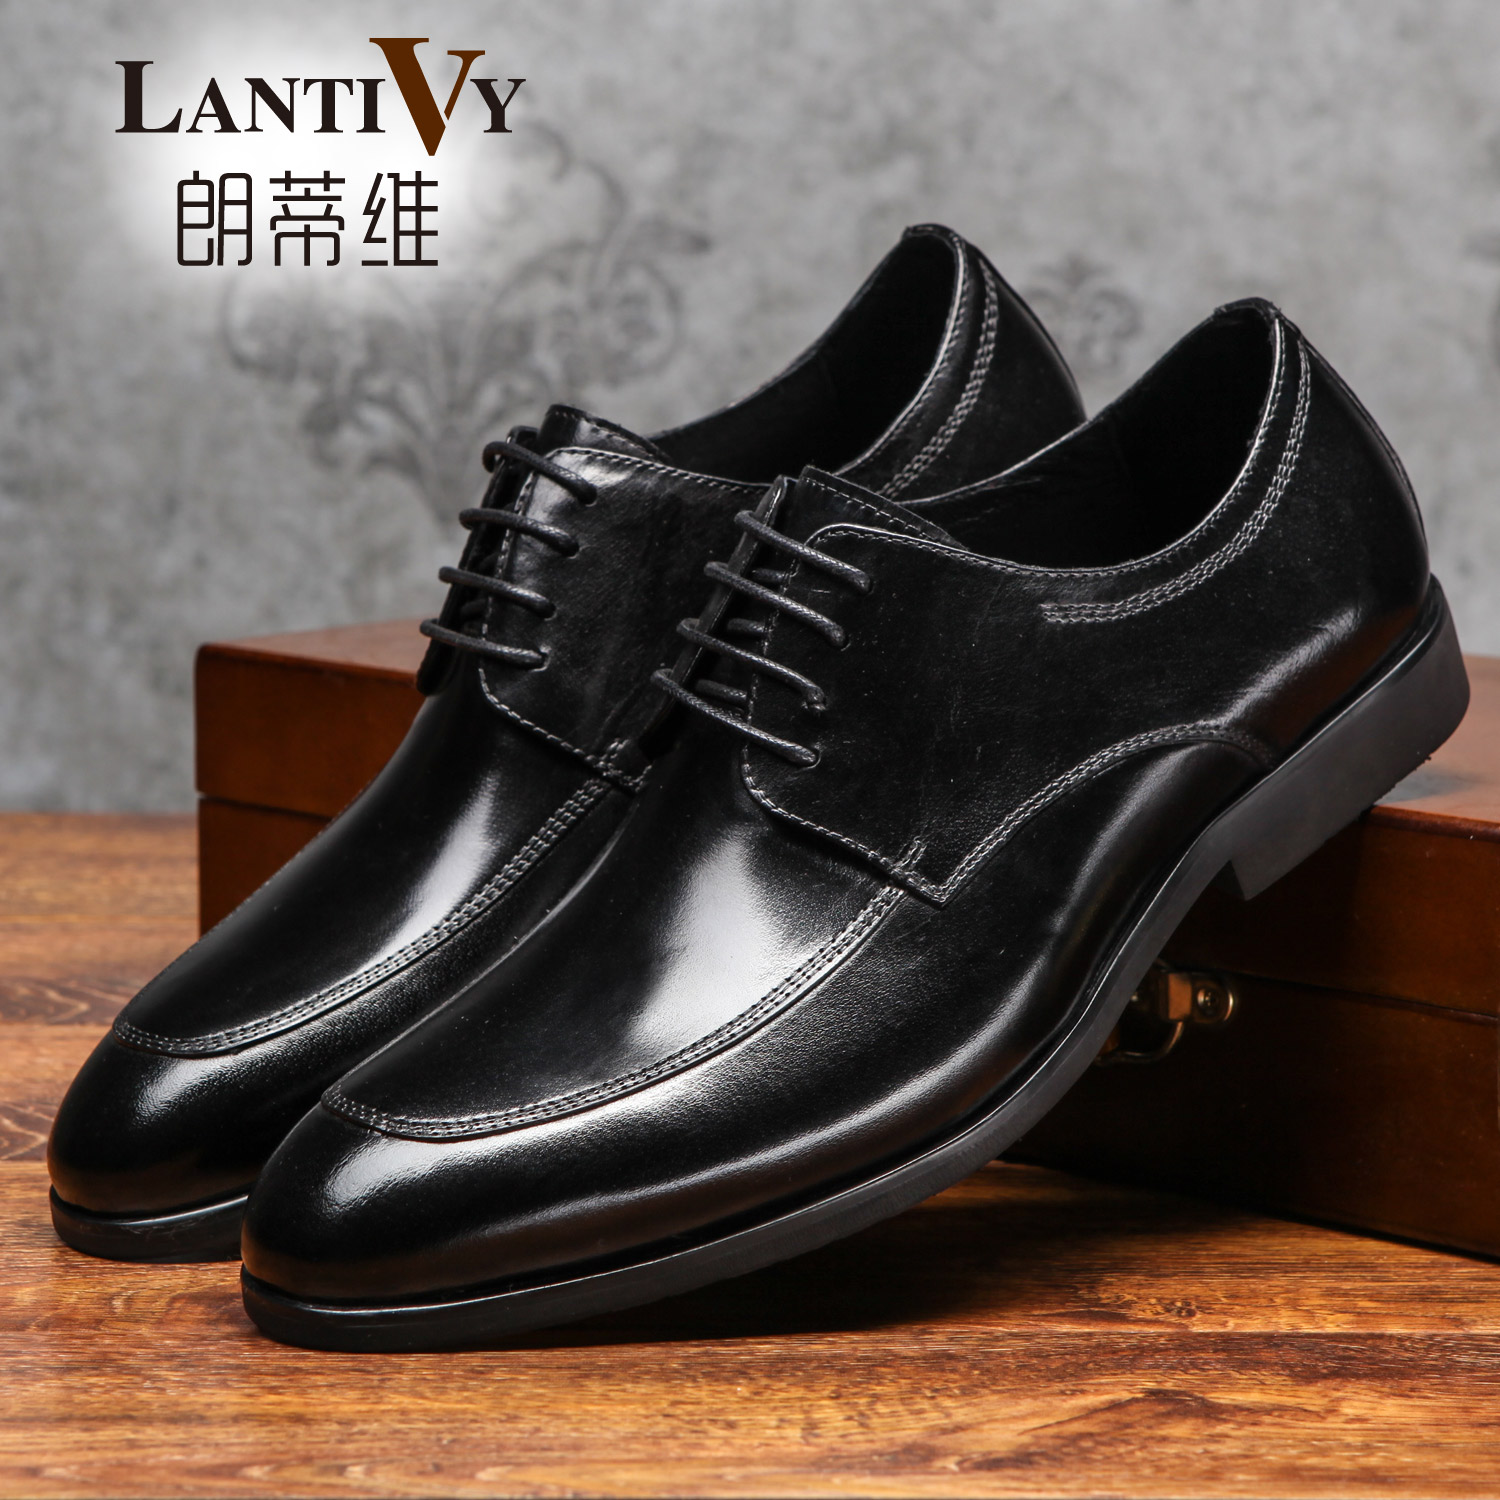 朗蒂维正装皮鞋男黑色商务鞋2016新款经典男士系带皮鞋婚鞋